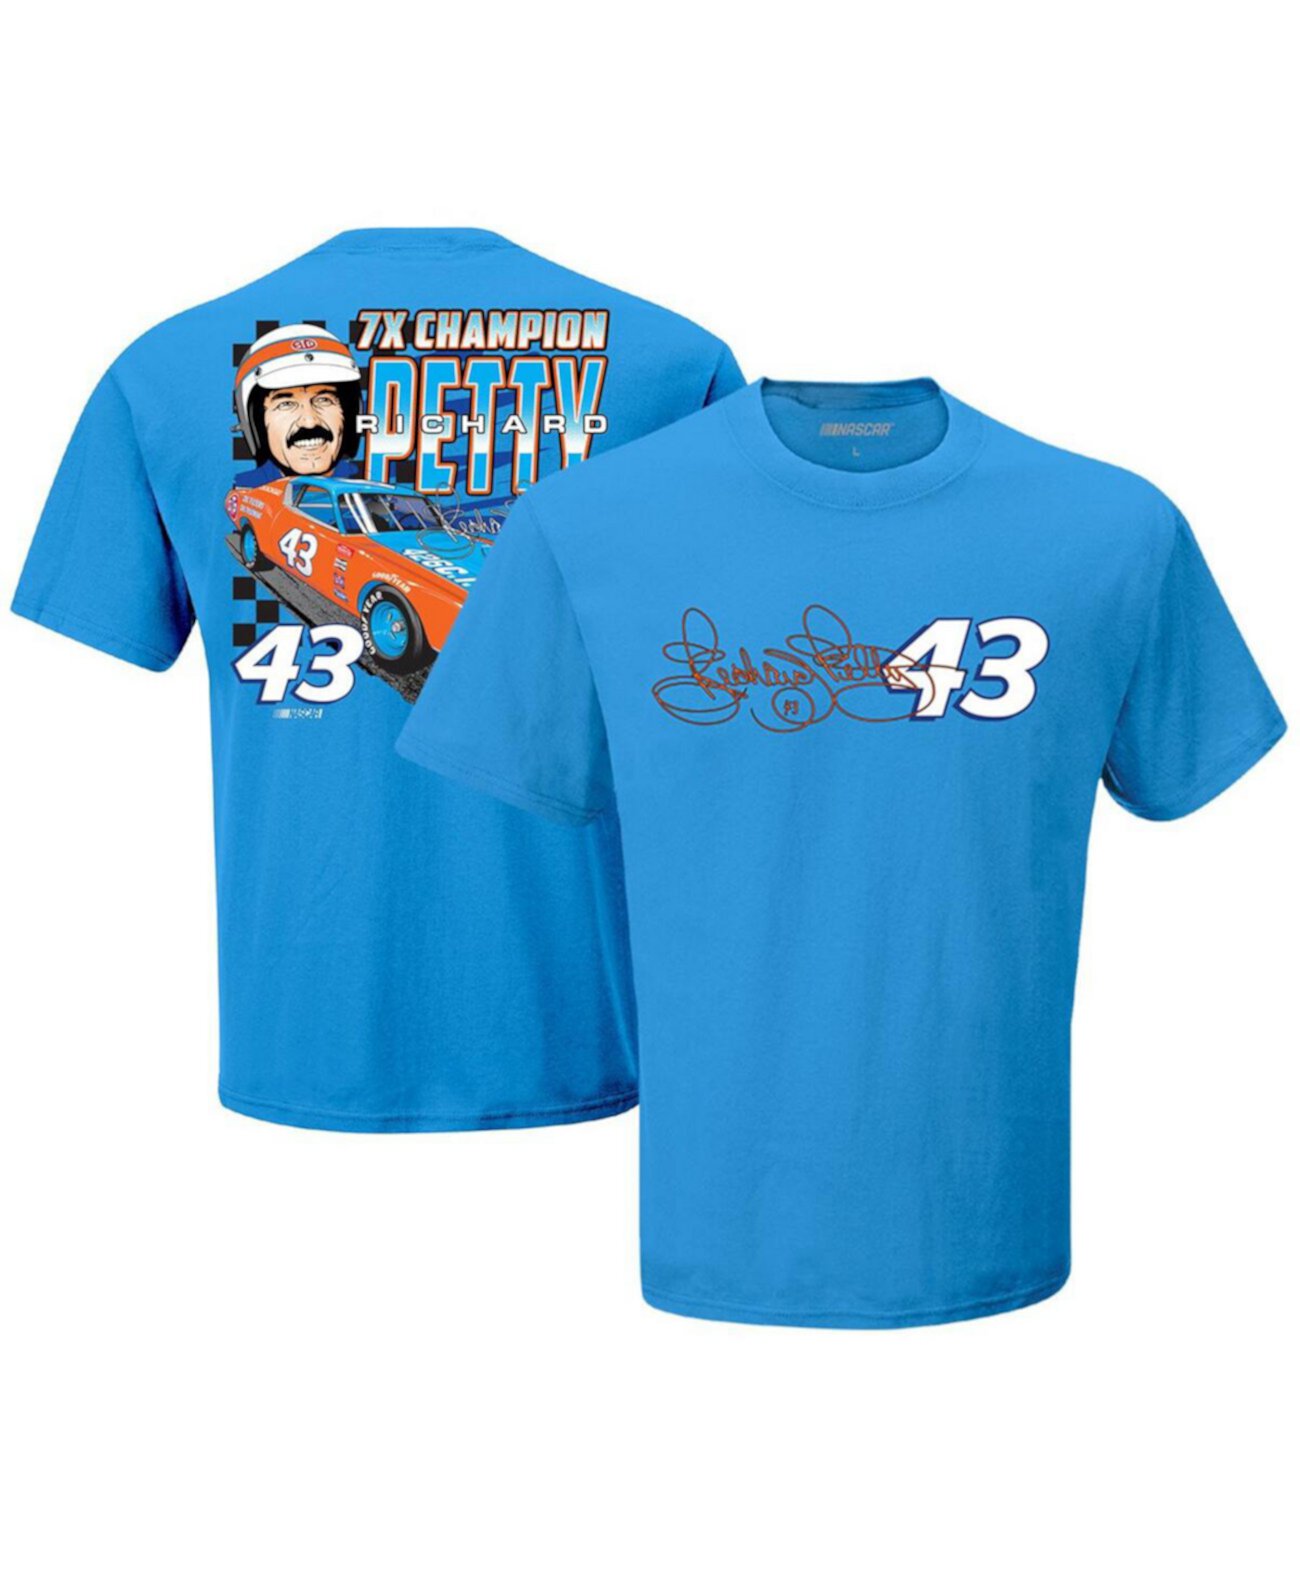 Мужская синяя футболка «Семикратный чемпион Ричарда Петти» Legacy Motor Club Team Collection